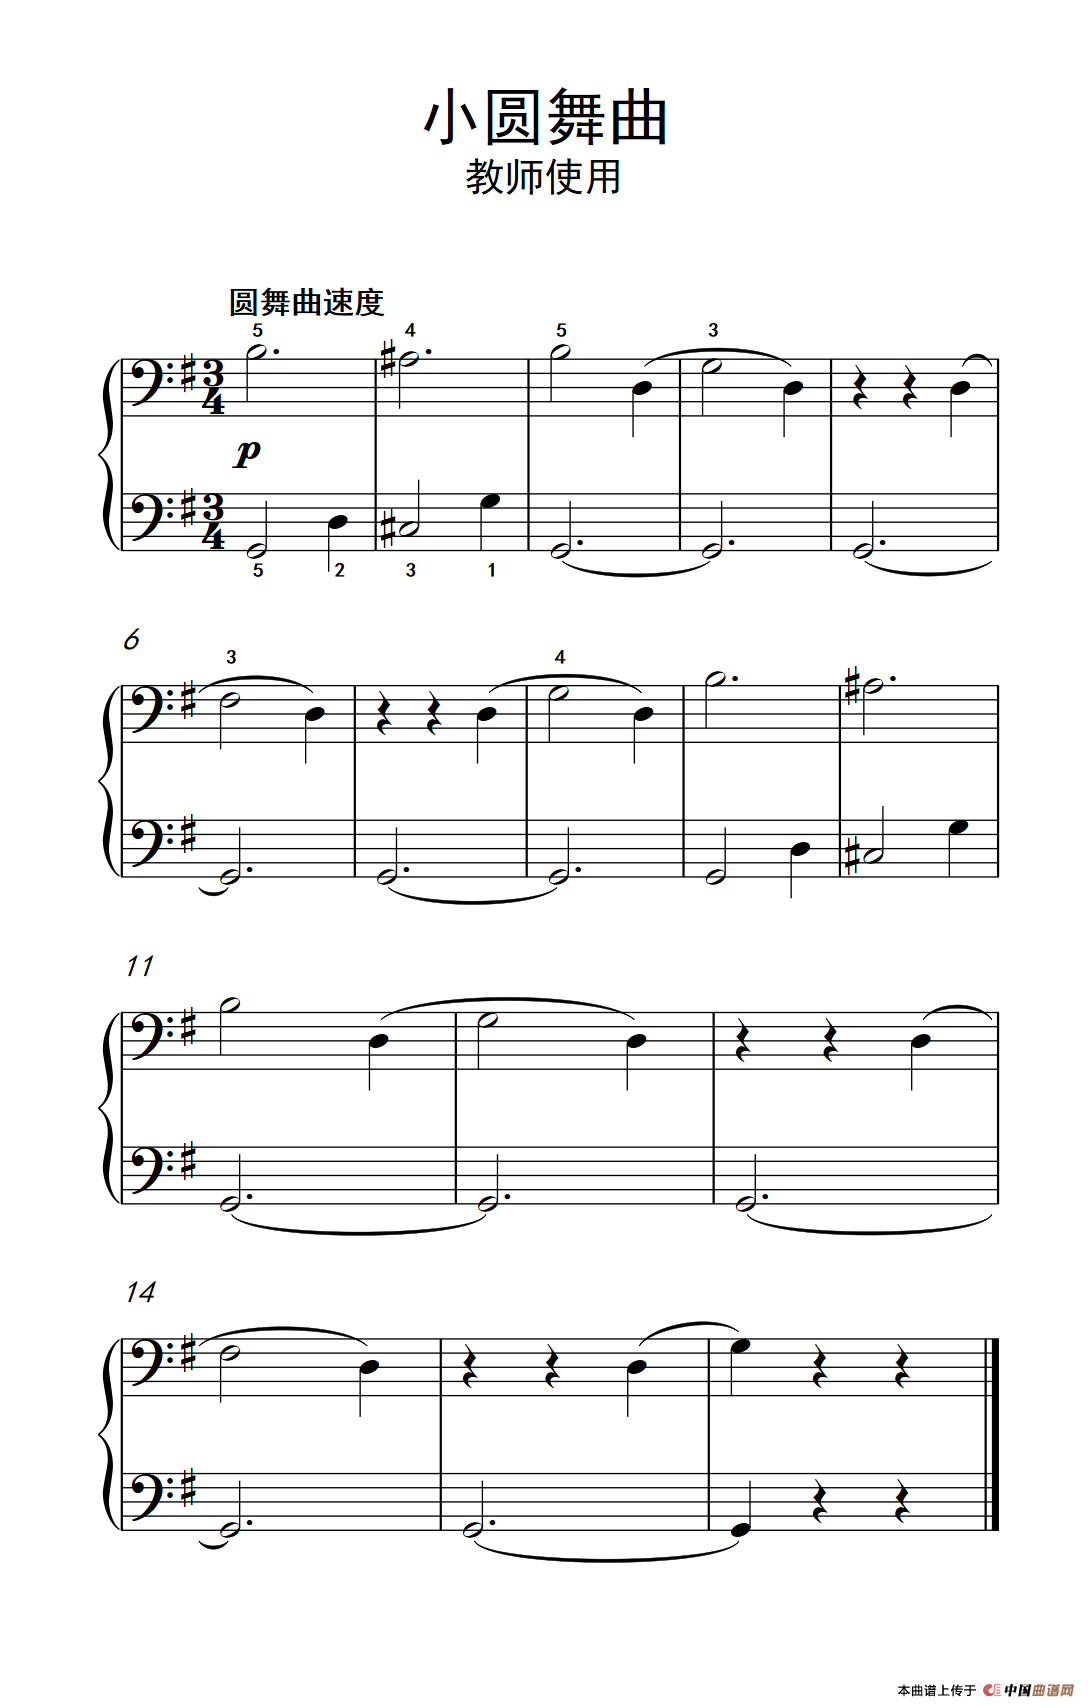 《小圆舞曲-教师使用》钢琴曲谱图分享